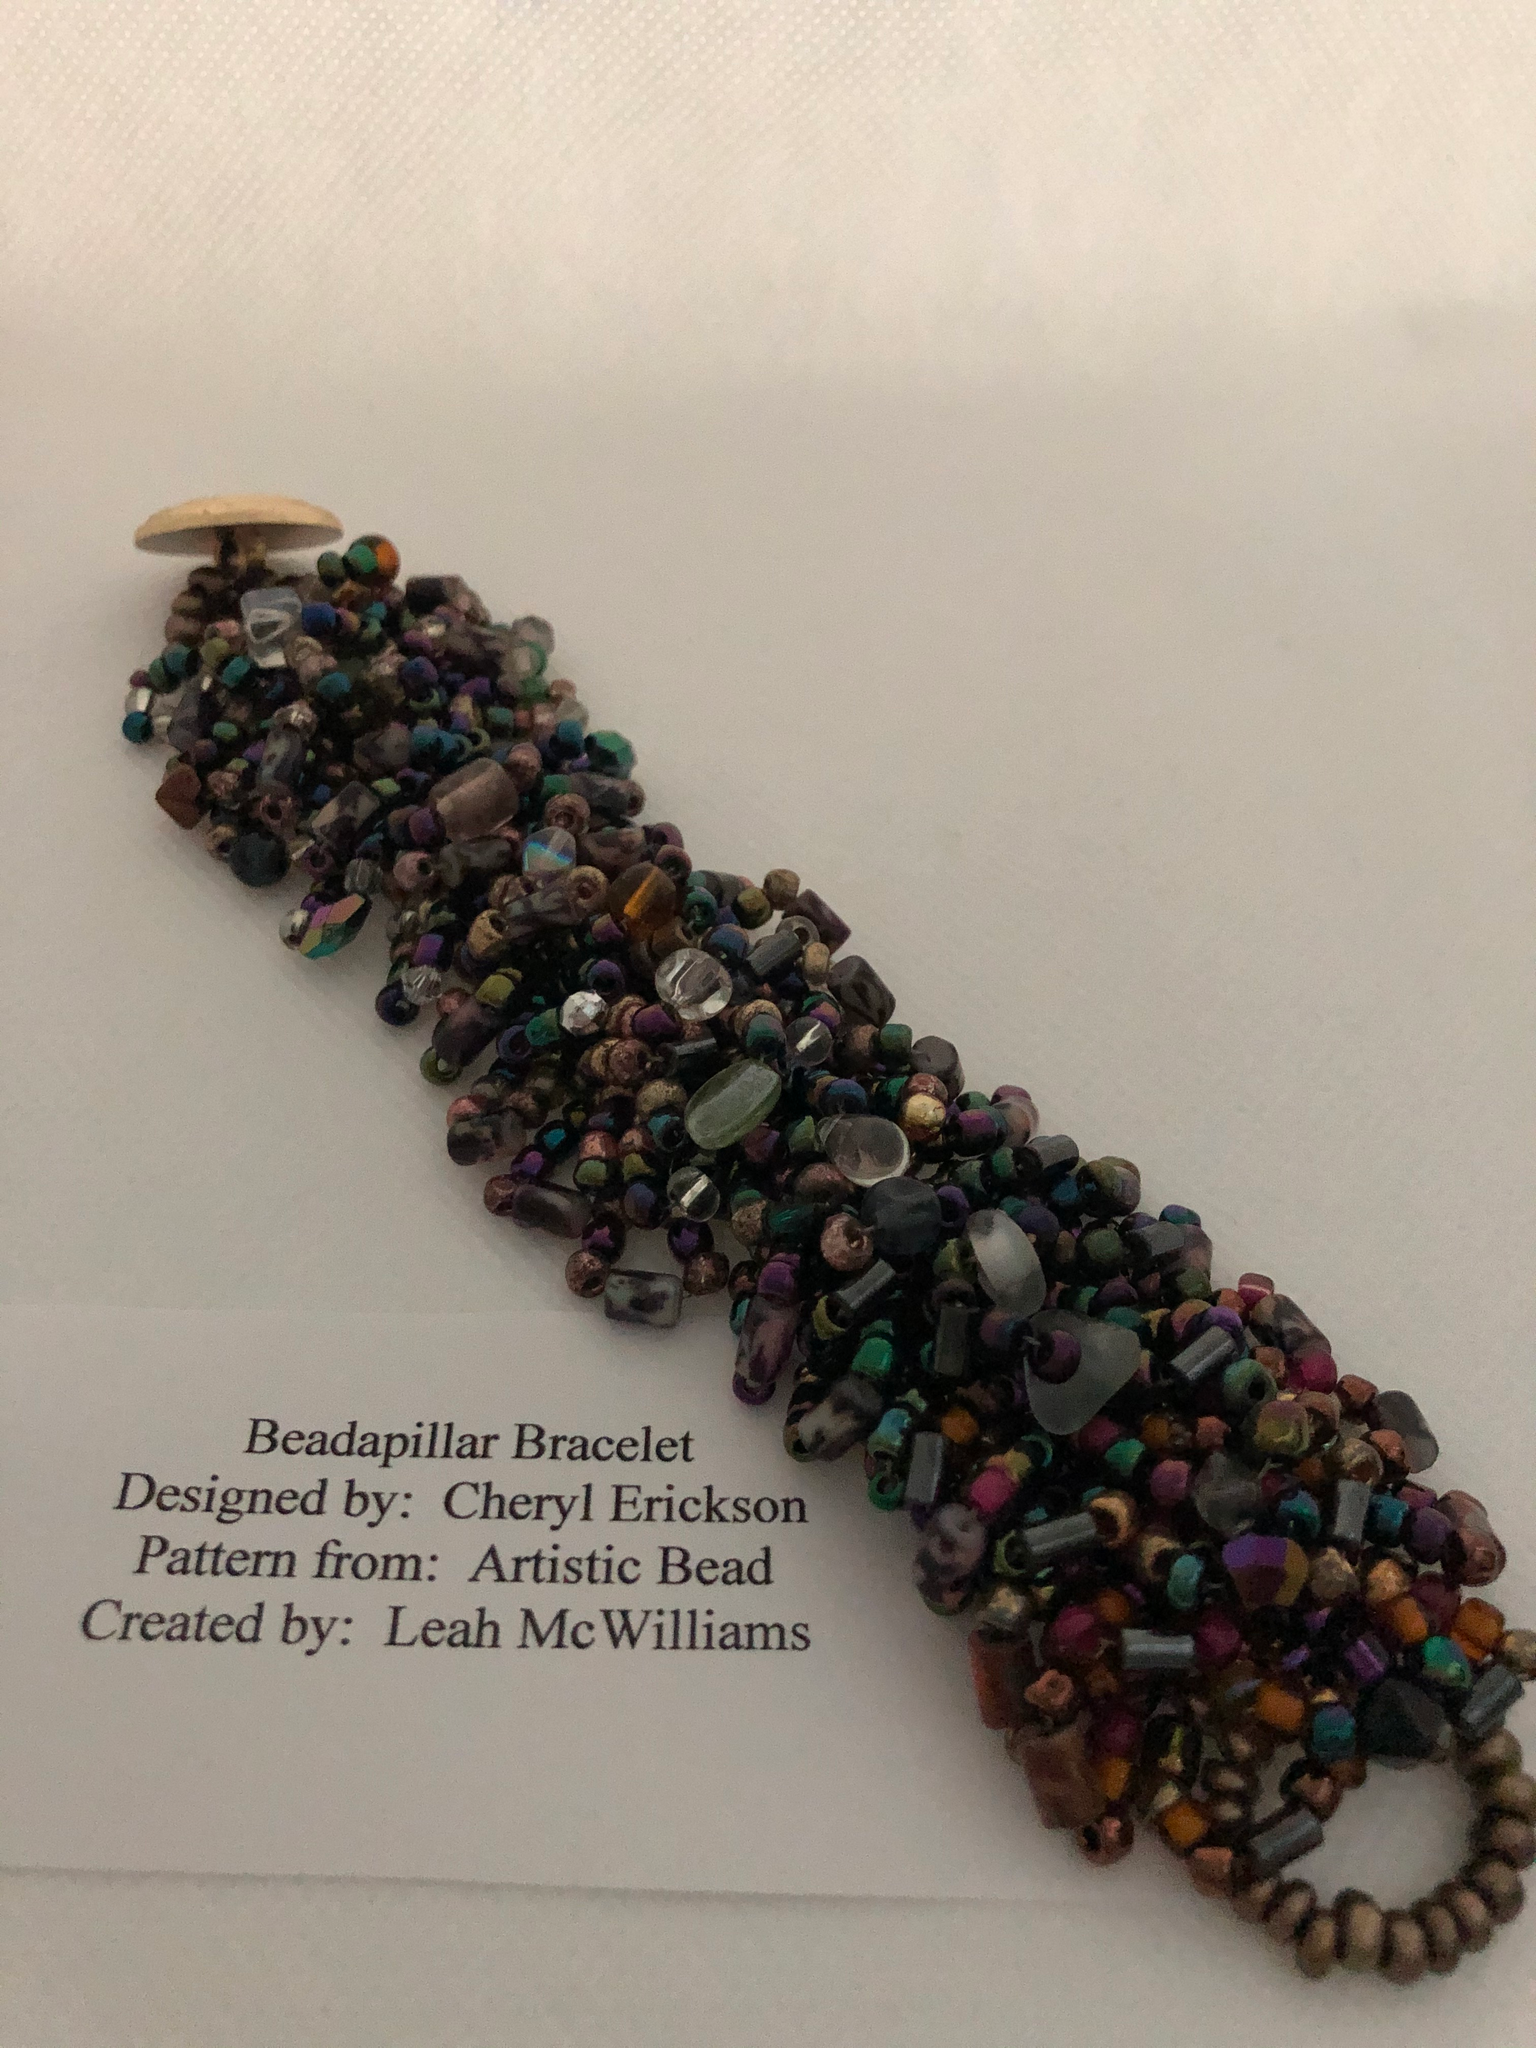 Beadapillar Bracelet